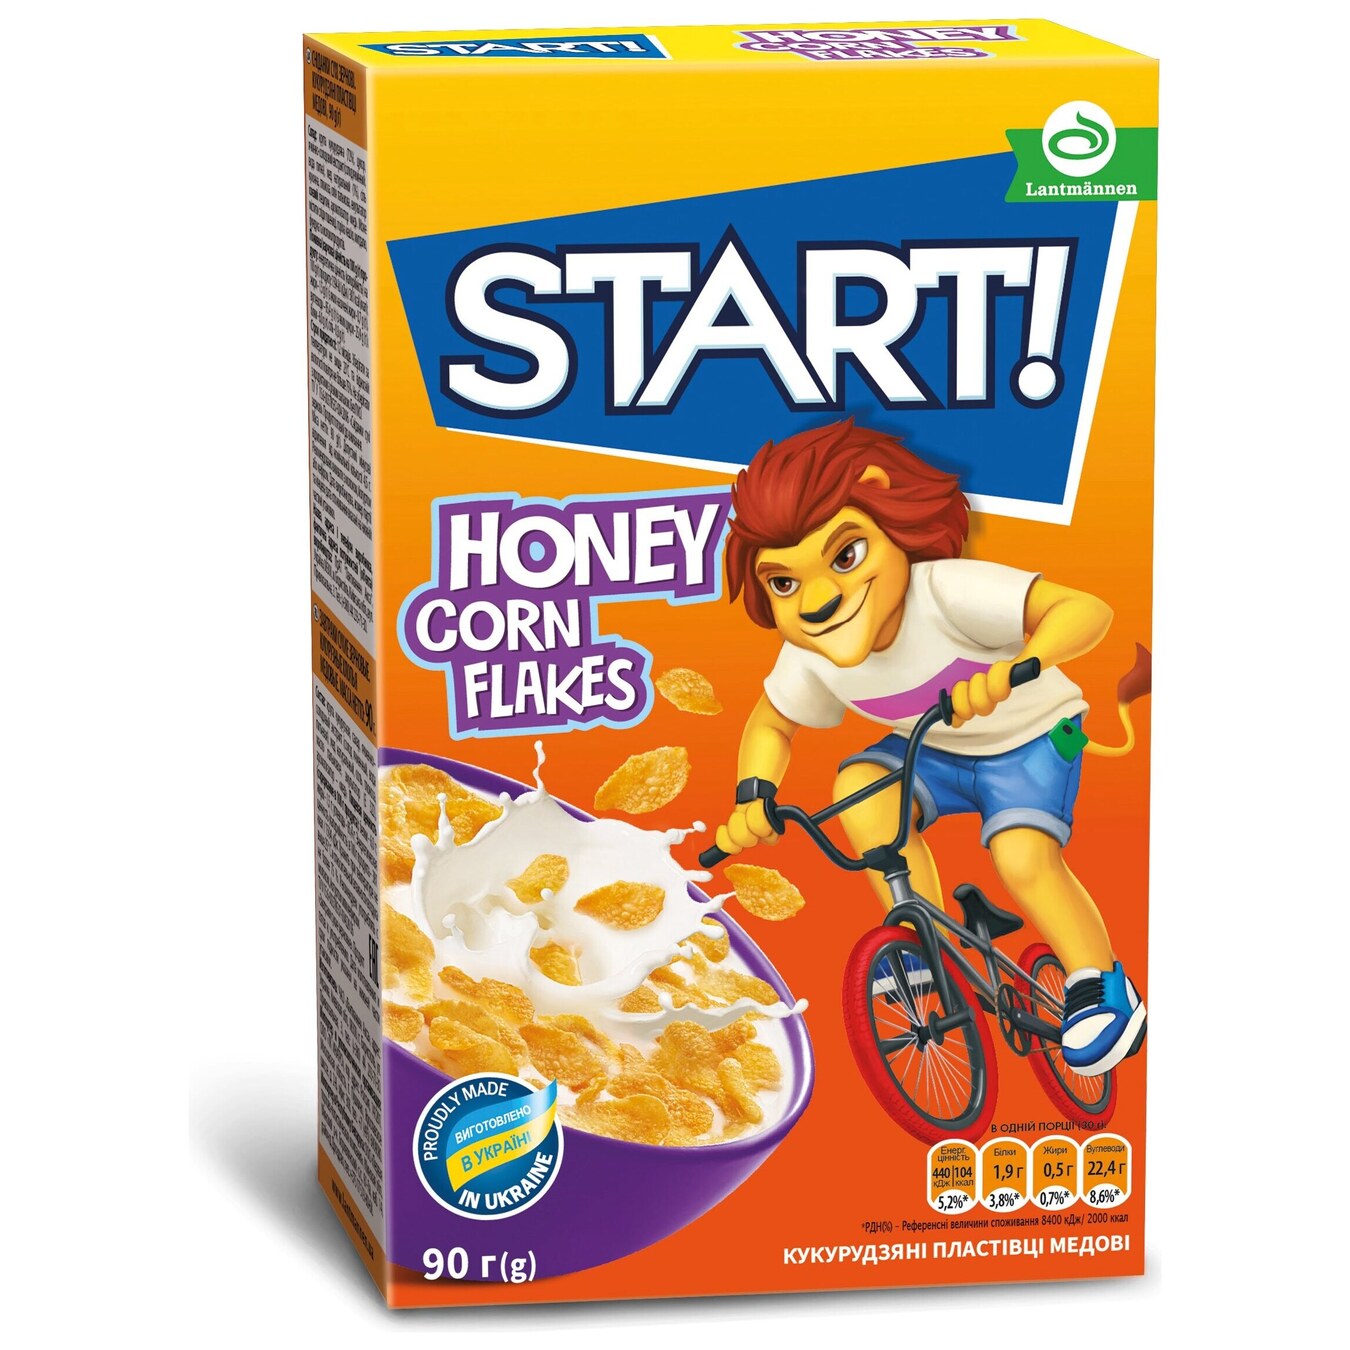 Start! Honey Corn Flakes Dry Breakfast 90g